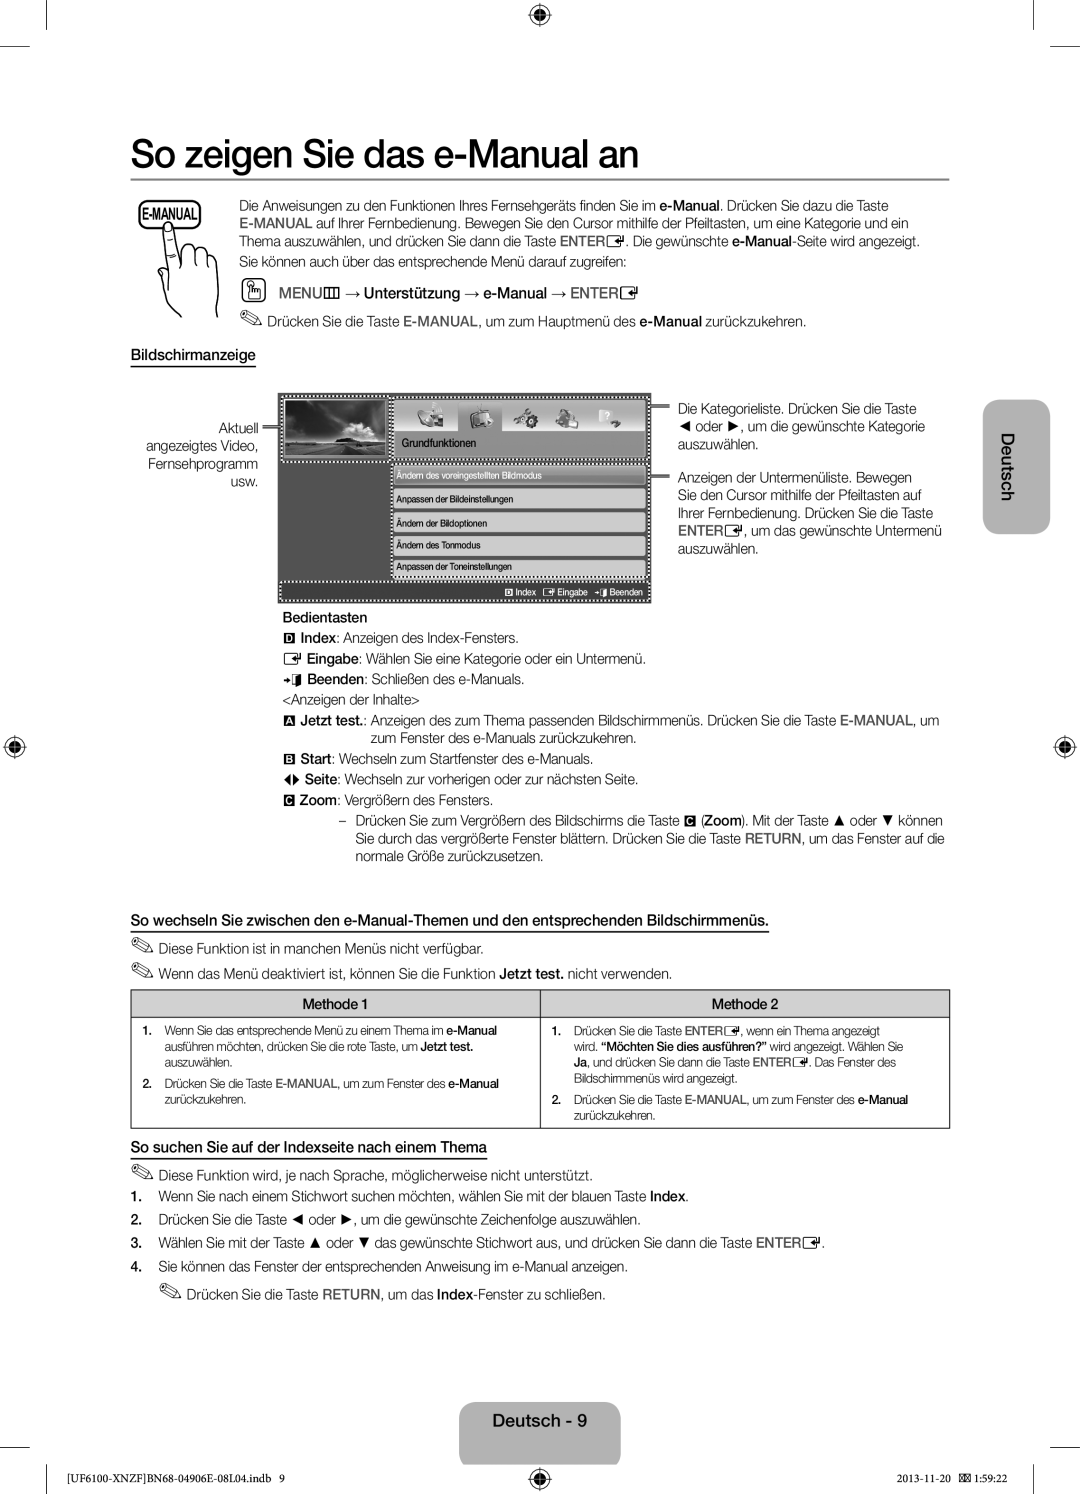 Samsung UE50F6100AWXZG manual So zeigen Sie das e-Manual an, OO MENUm→ Unterstützung → e-Manual → ENTERE, Bildschirmanzeige 